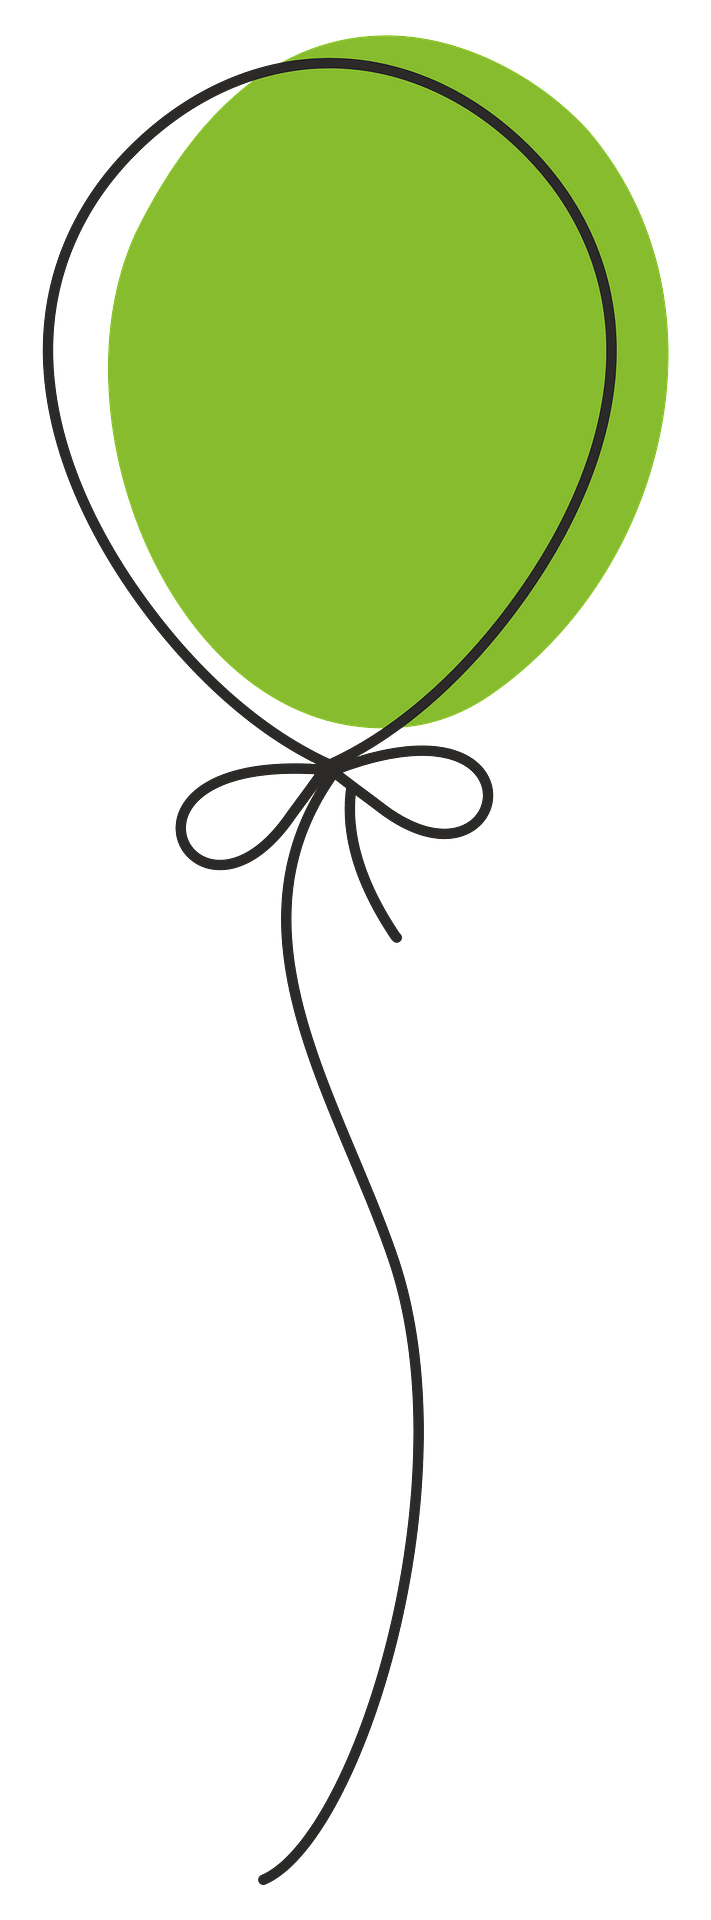 День рождения зеленый шар PNG Image